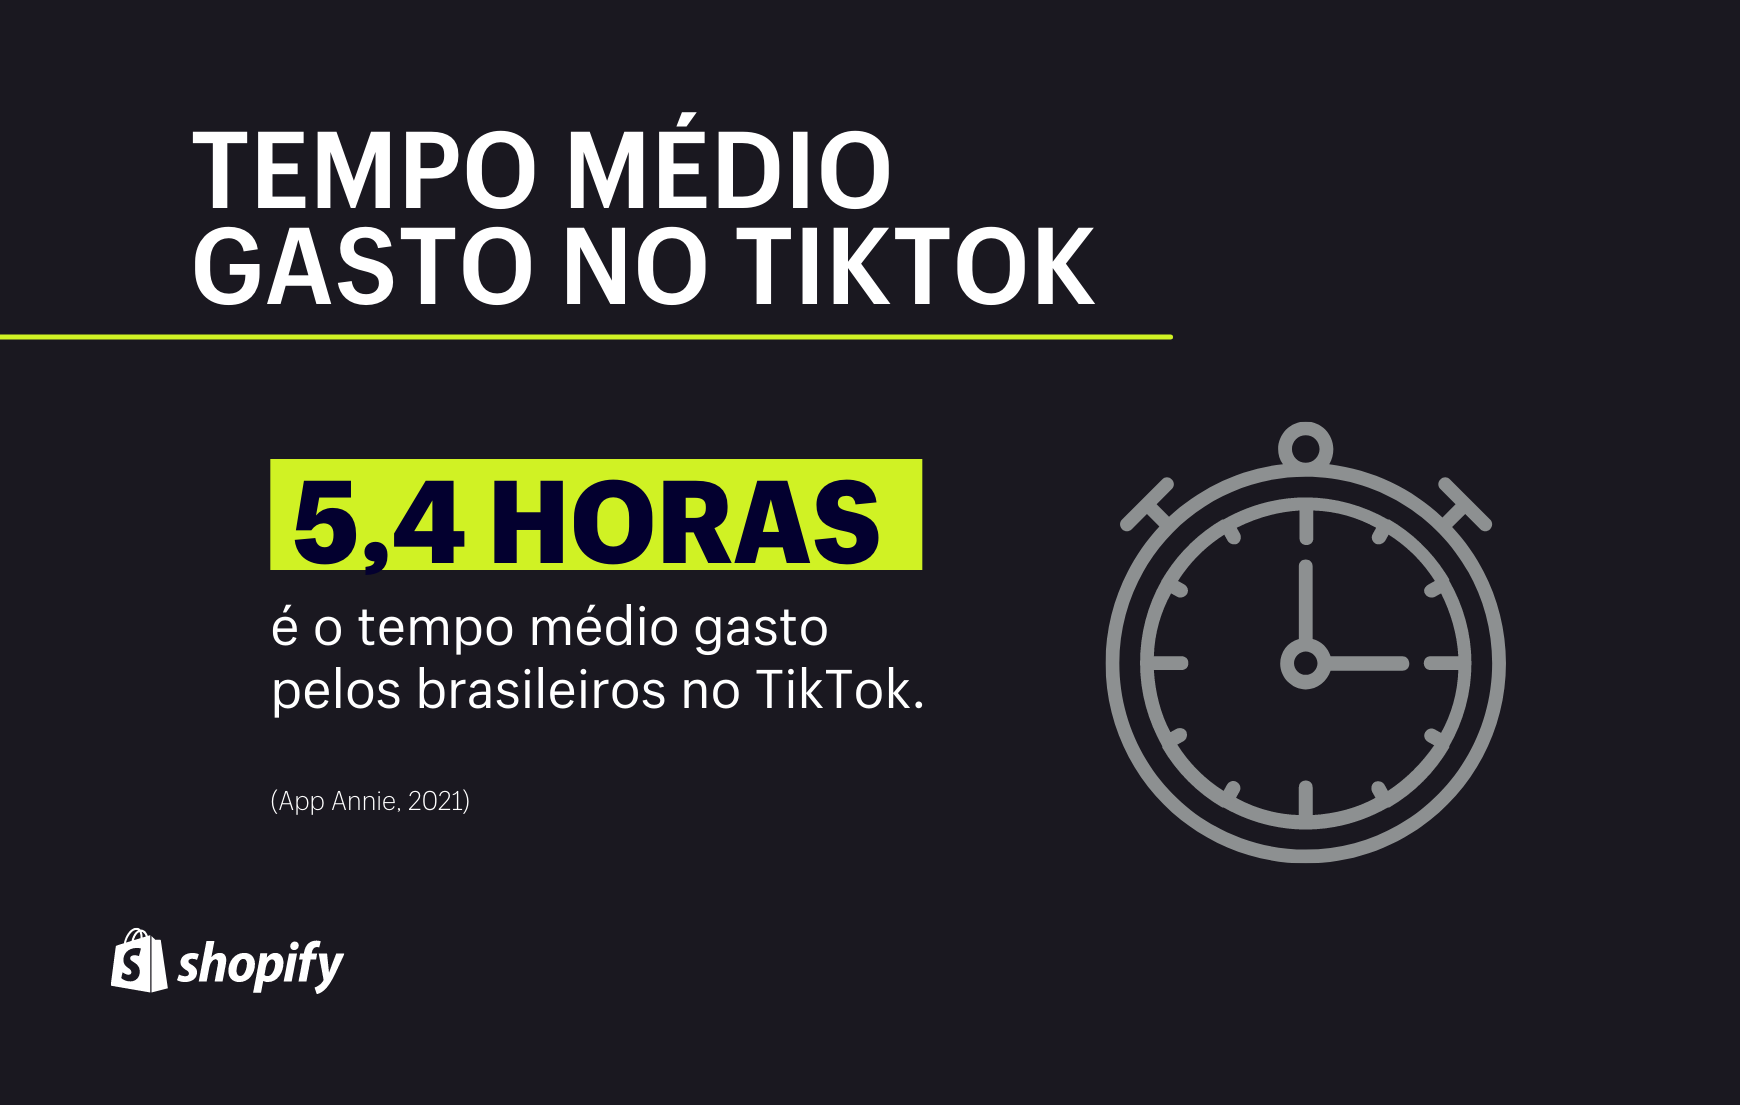 Infográfico com fundo preto. No primeiro plano, em verde e branco, há a informação de que o tempo médio gasto pelos brasileiros no TikTok é de 5,4 horas por dia.